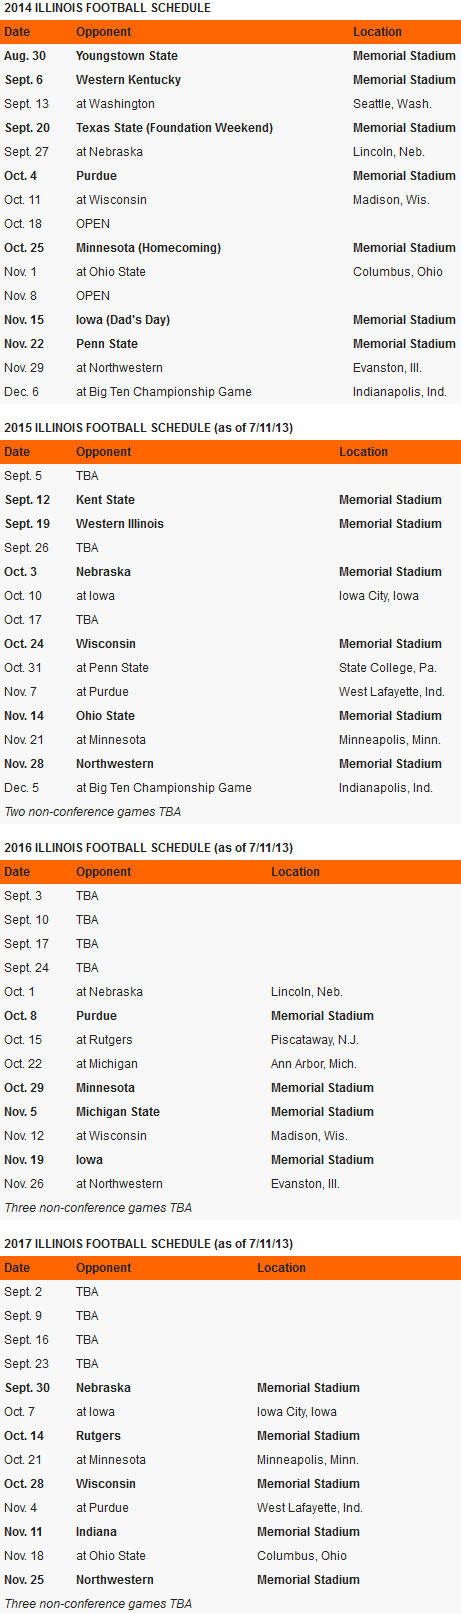 Illinois Football Future Schedules 2014, 2015, 2016, 2017